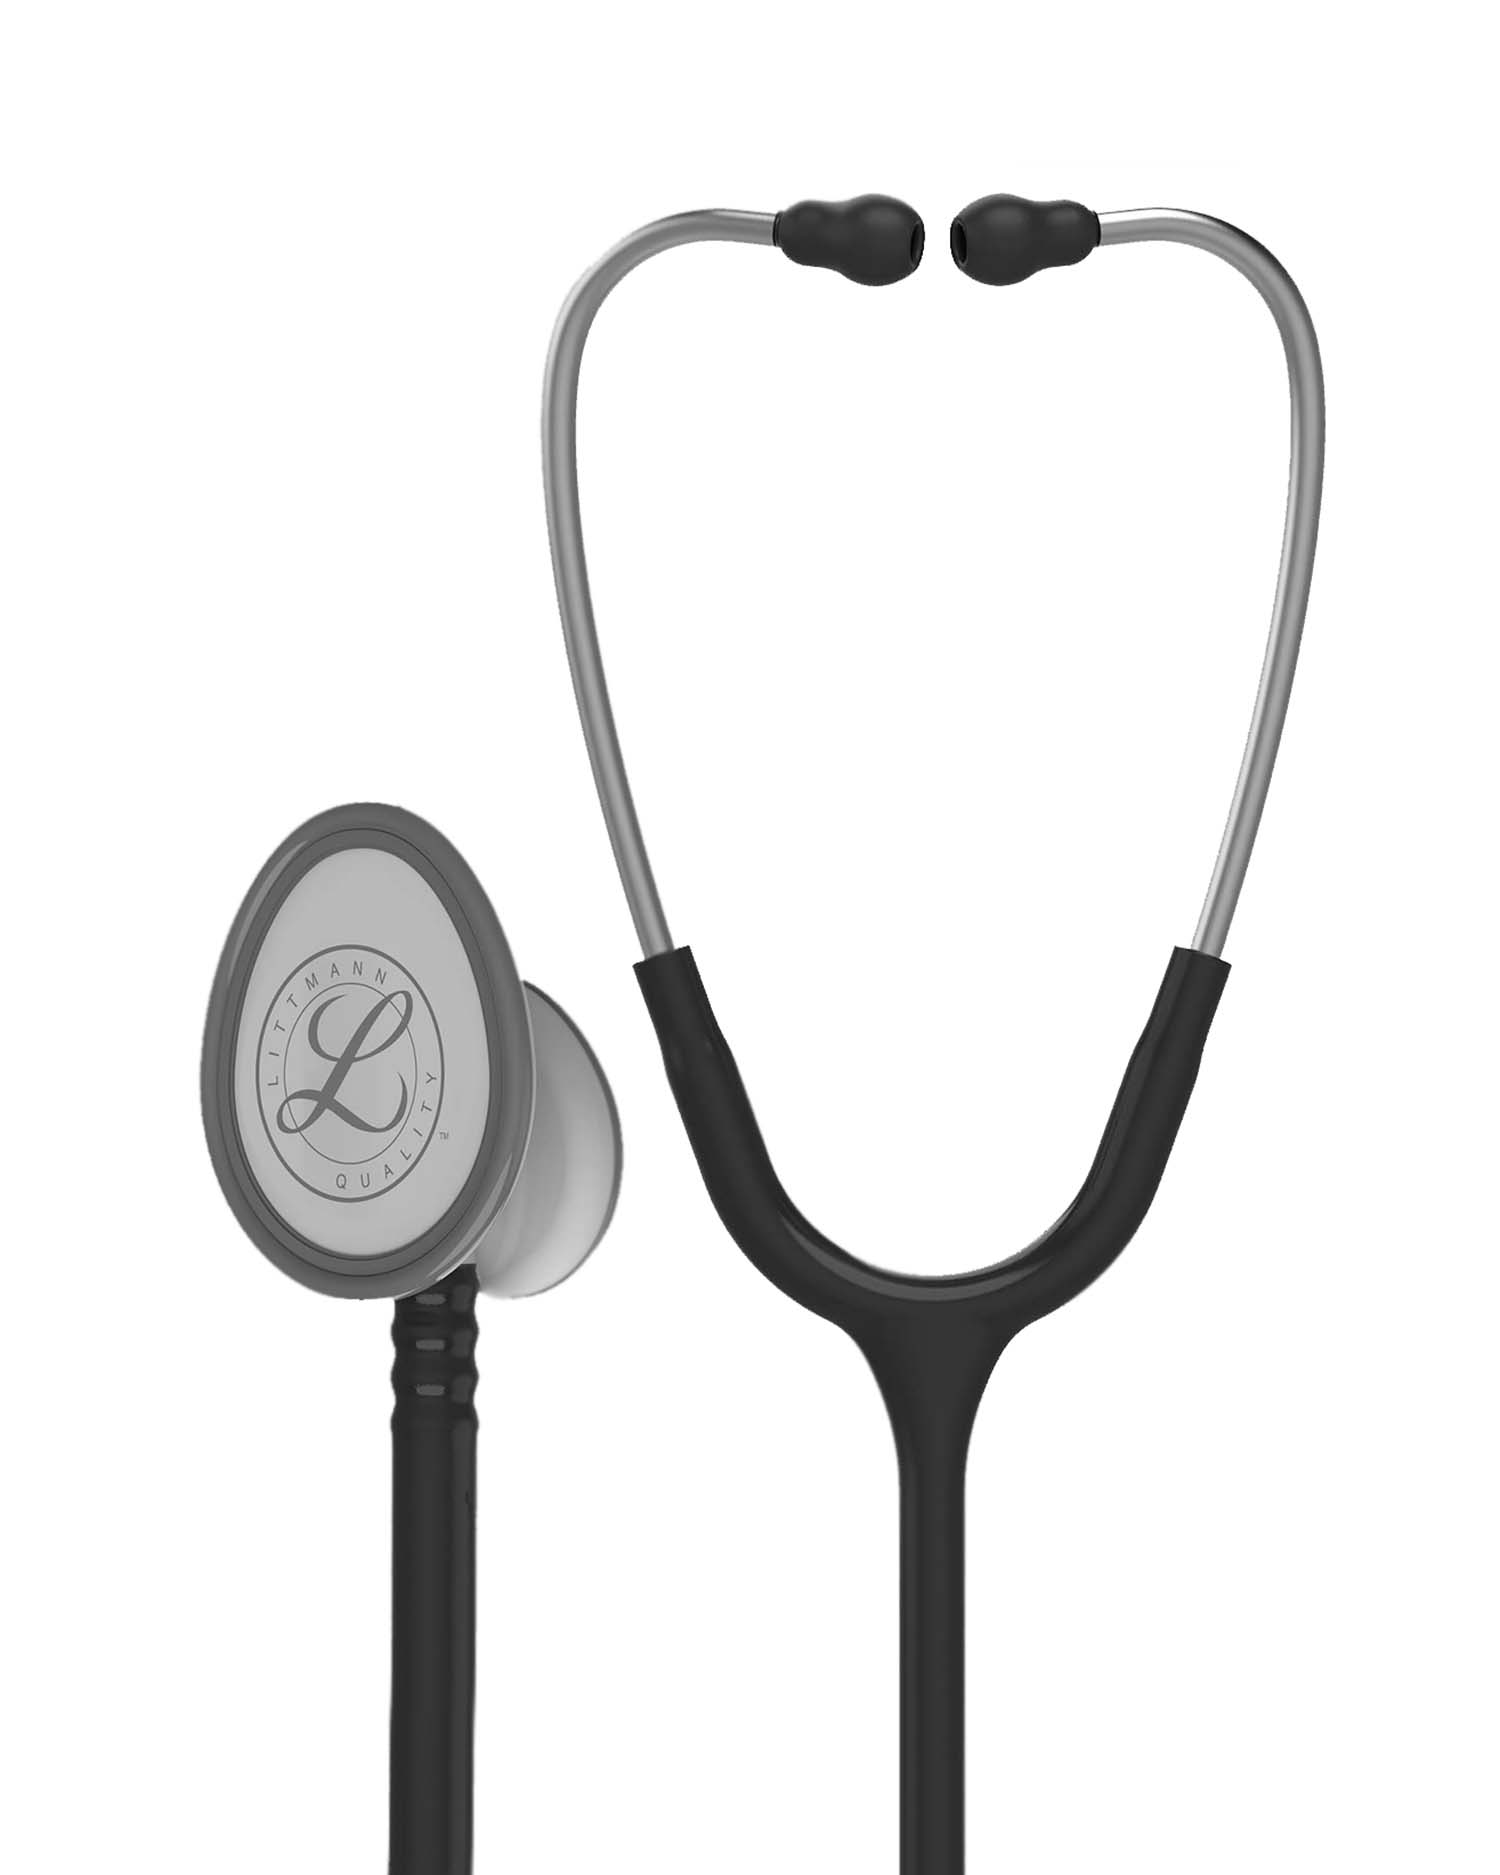 Buy Littmann and Major Brand Stethoscopes Online